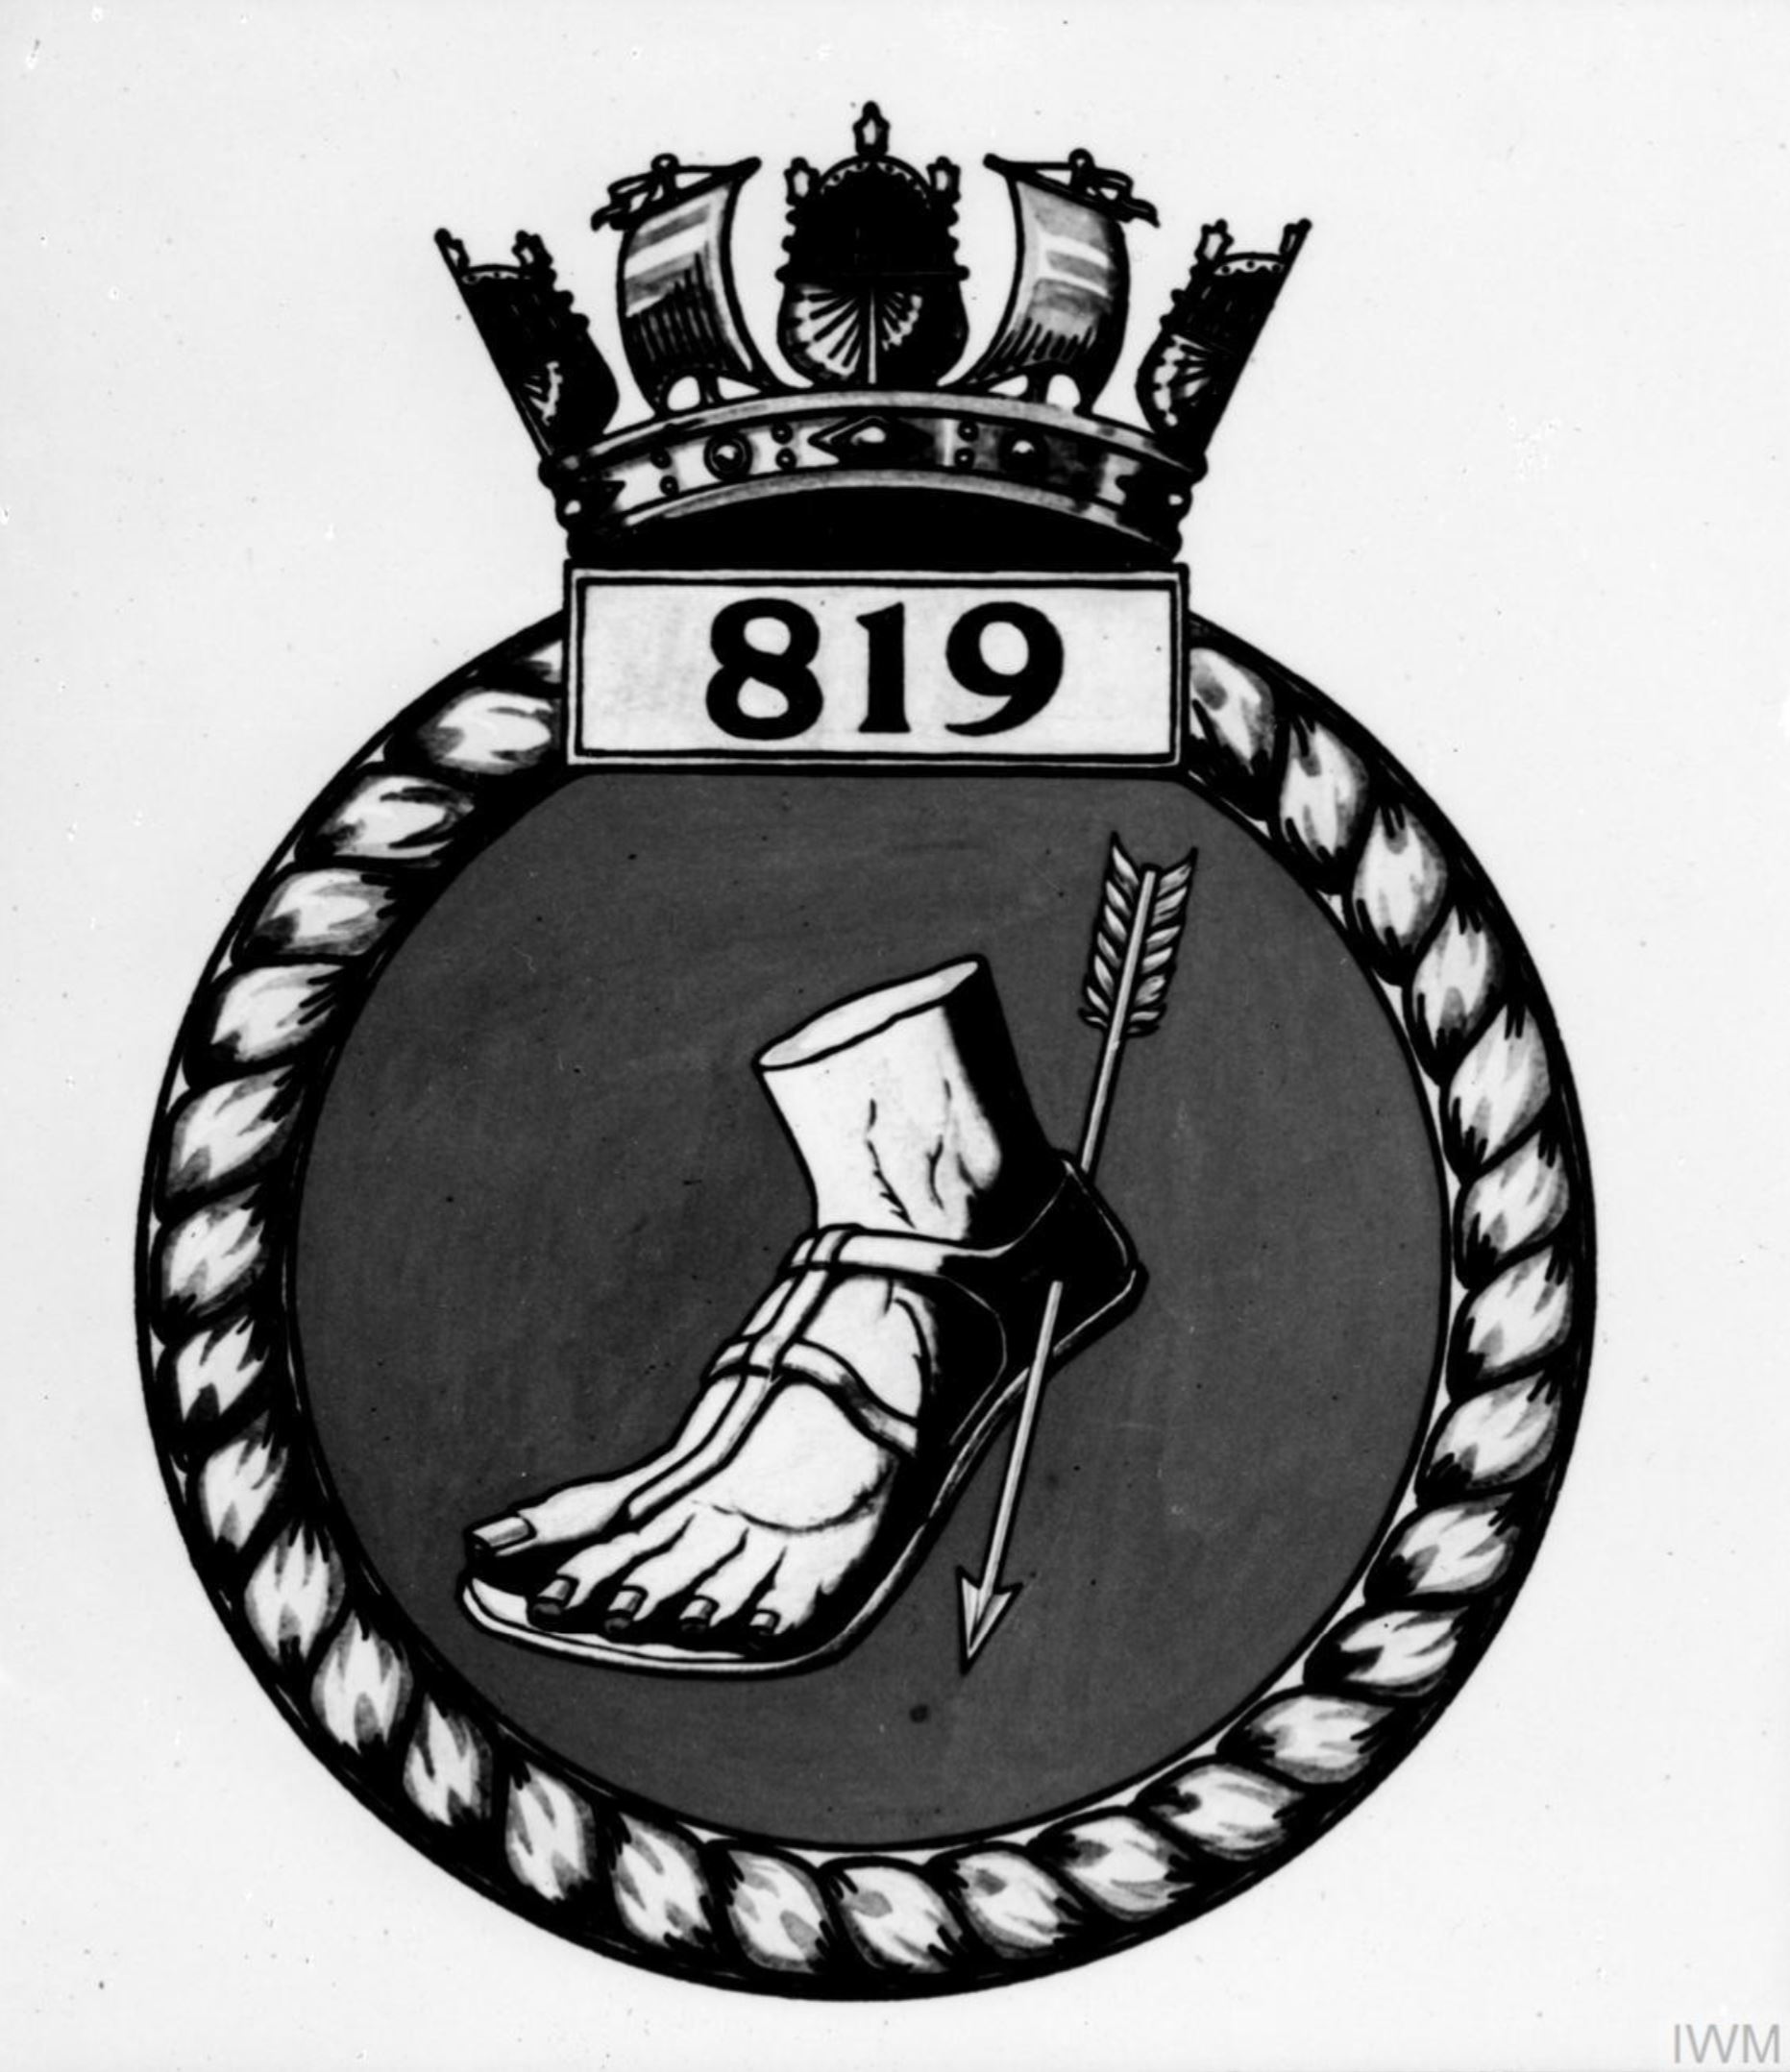 Fleet Air Arm crest of 819 Squadron IWM A28149